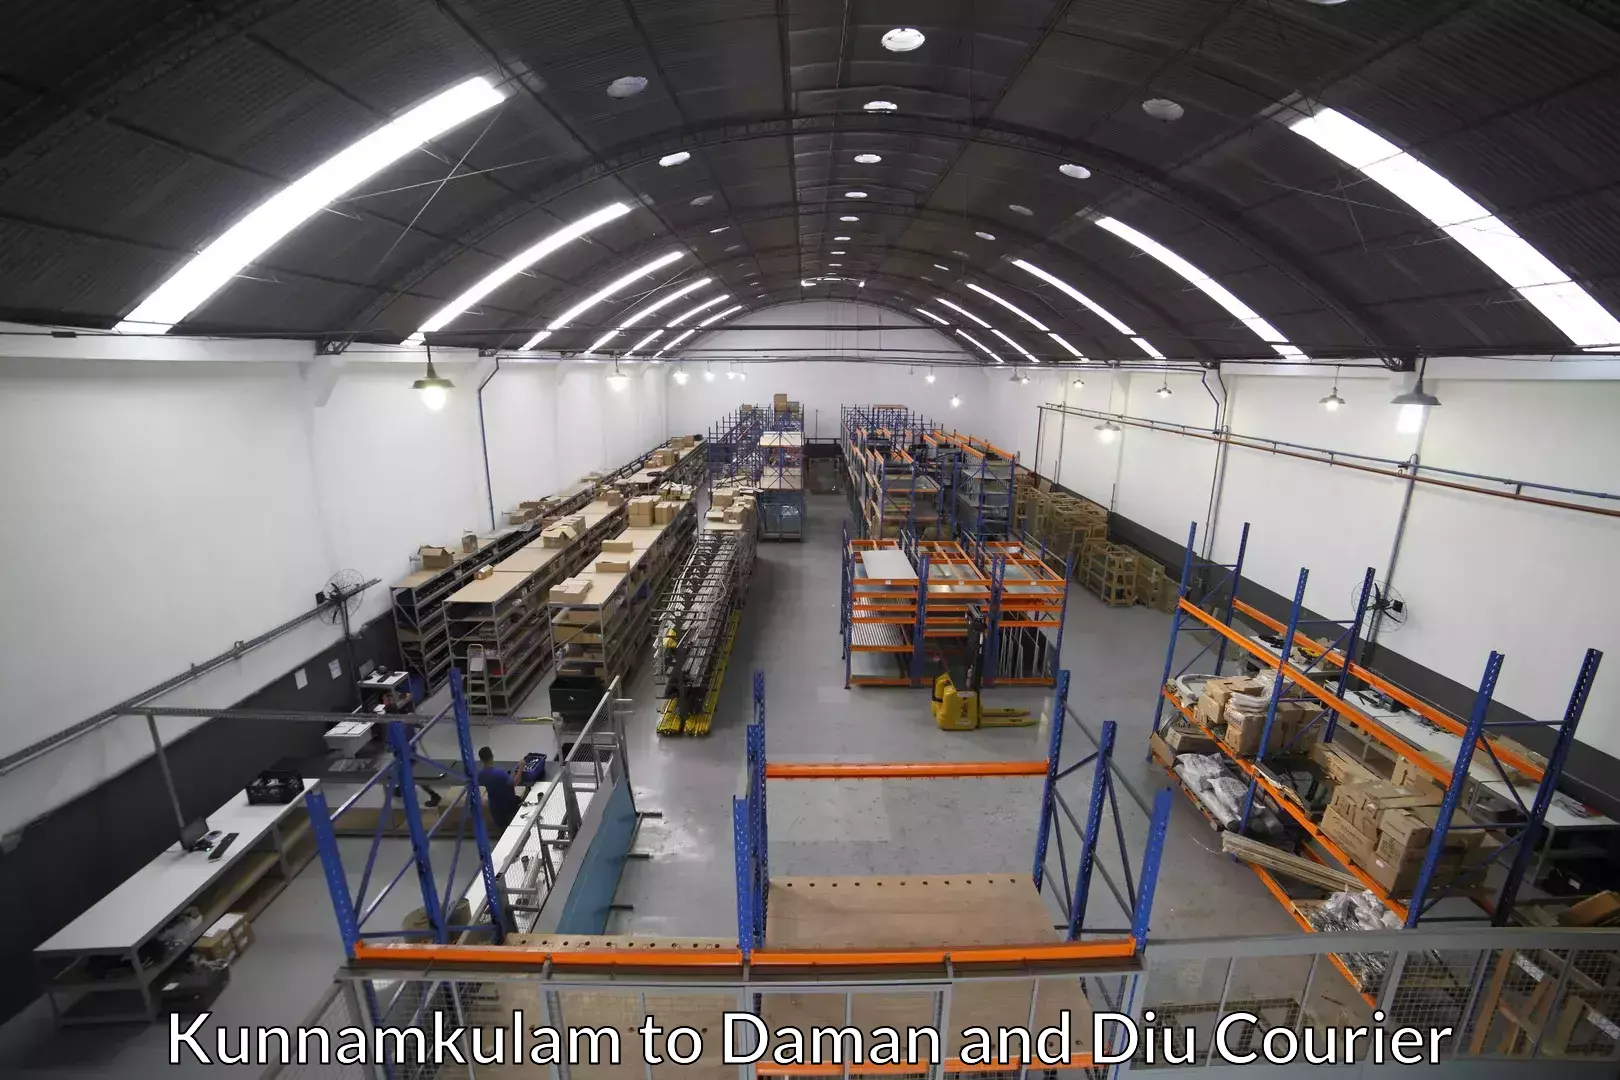 Expert goods movers Kunnamkulam to Diu